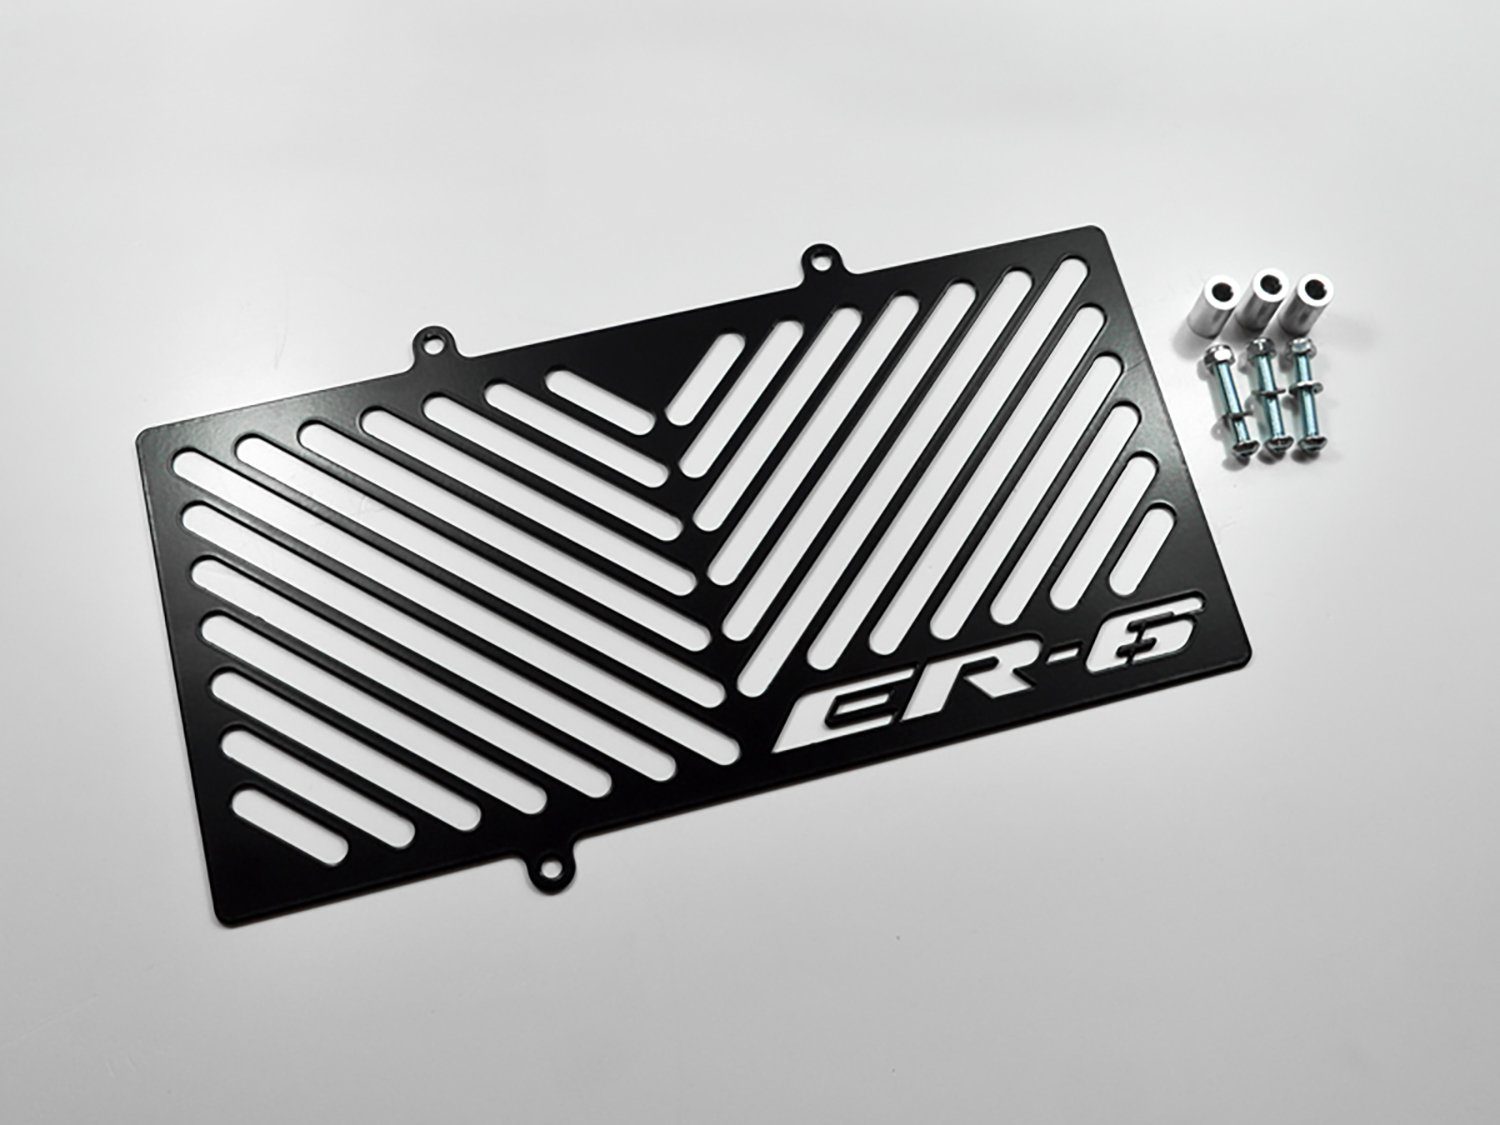 ZIEGER Motorrad-Additiv Kühlerabdeckung für Kawasaki ER-6 n / f 2012-16 Logo schwarz, Motorradkühlerabdeckung | Kraftstoffadditive